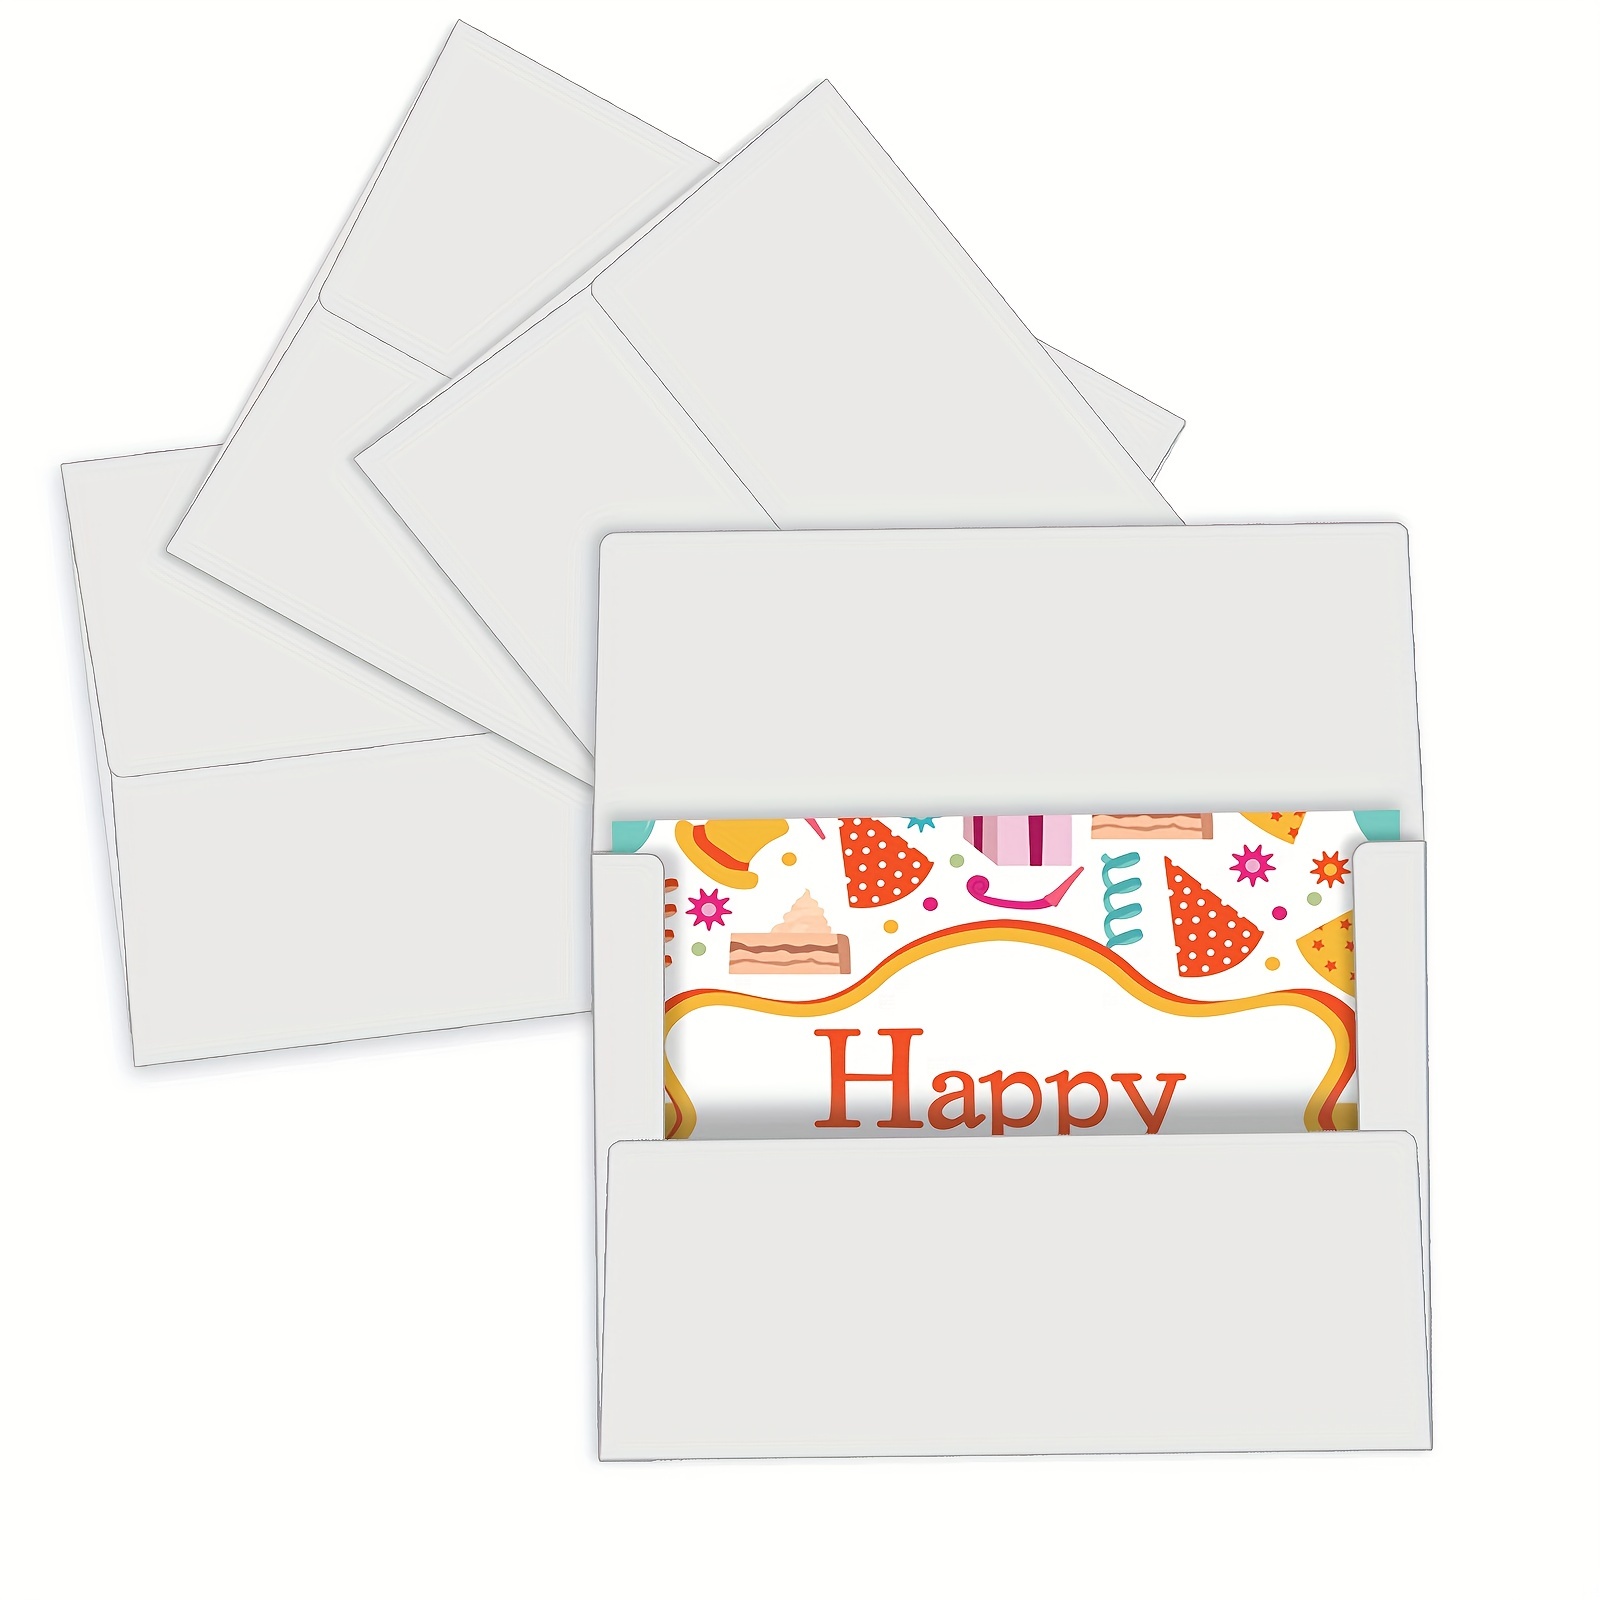  Thenshop 200pcs 5 x 7 Envelopes A7 Envelopes with